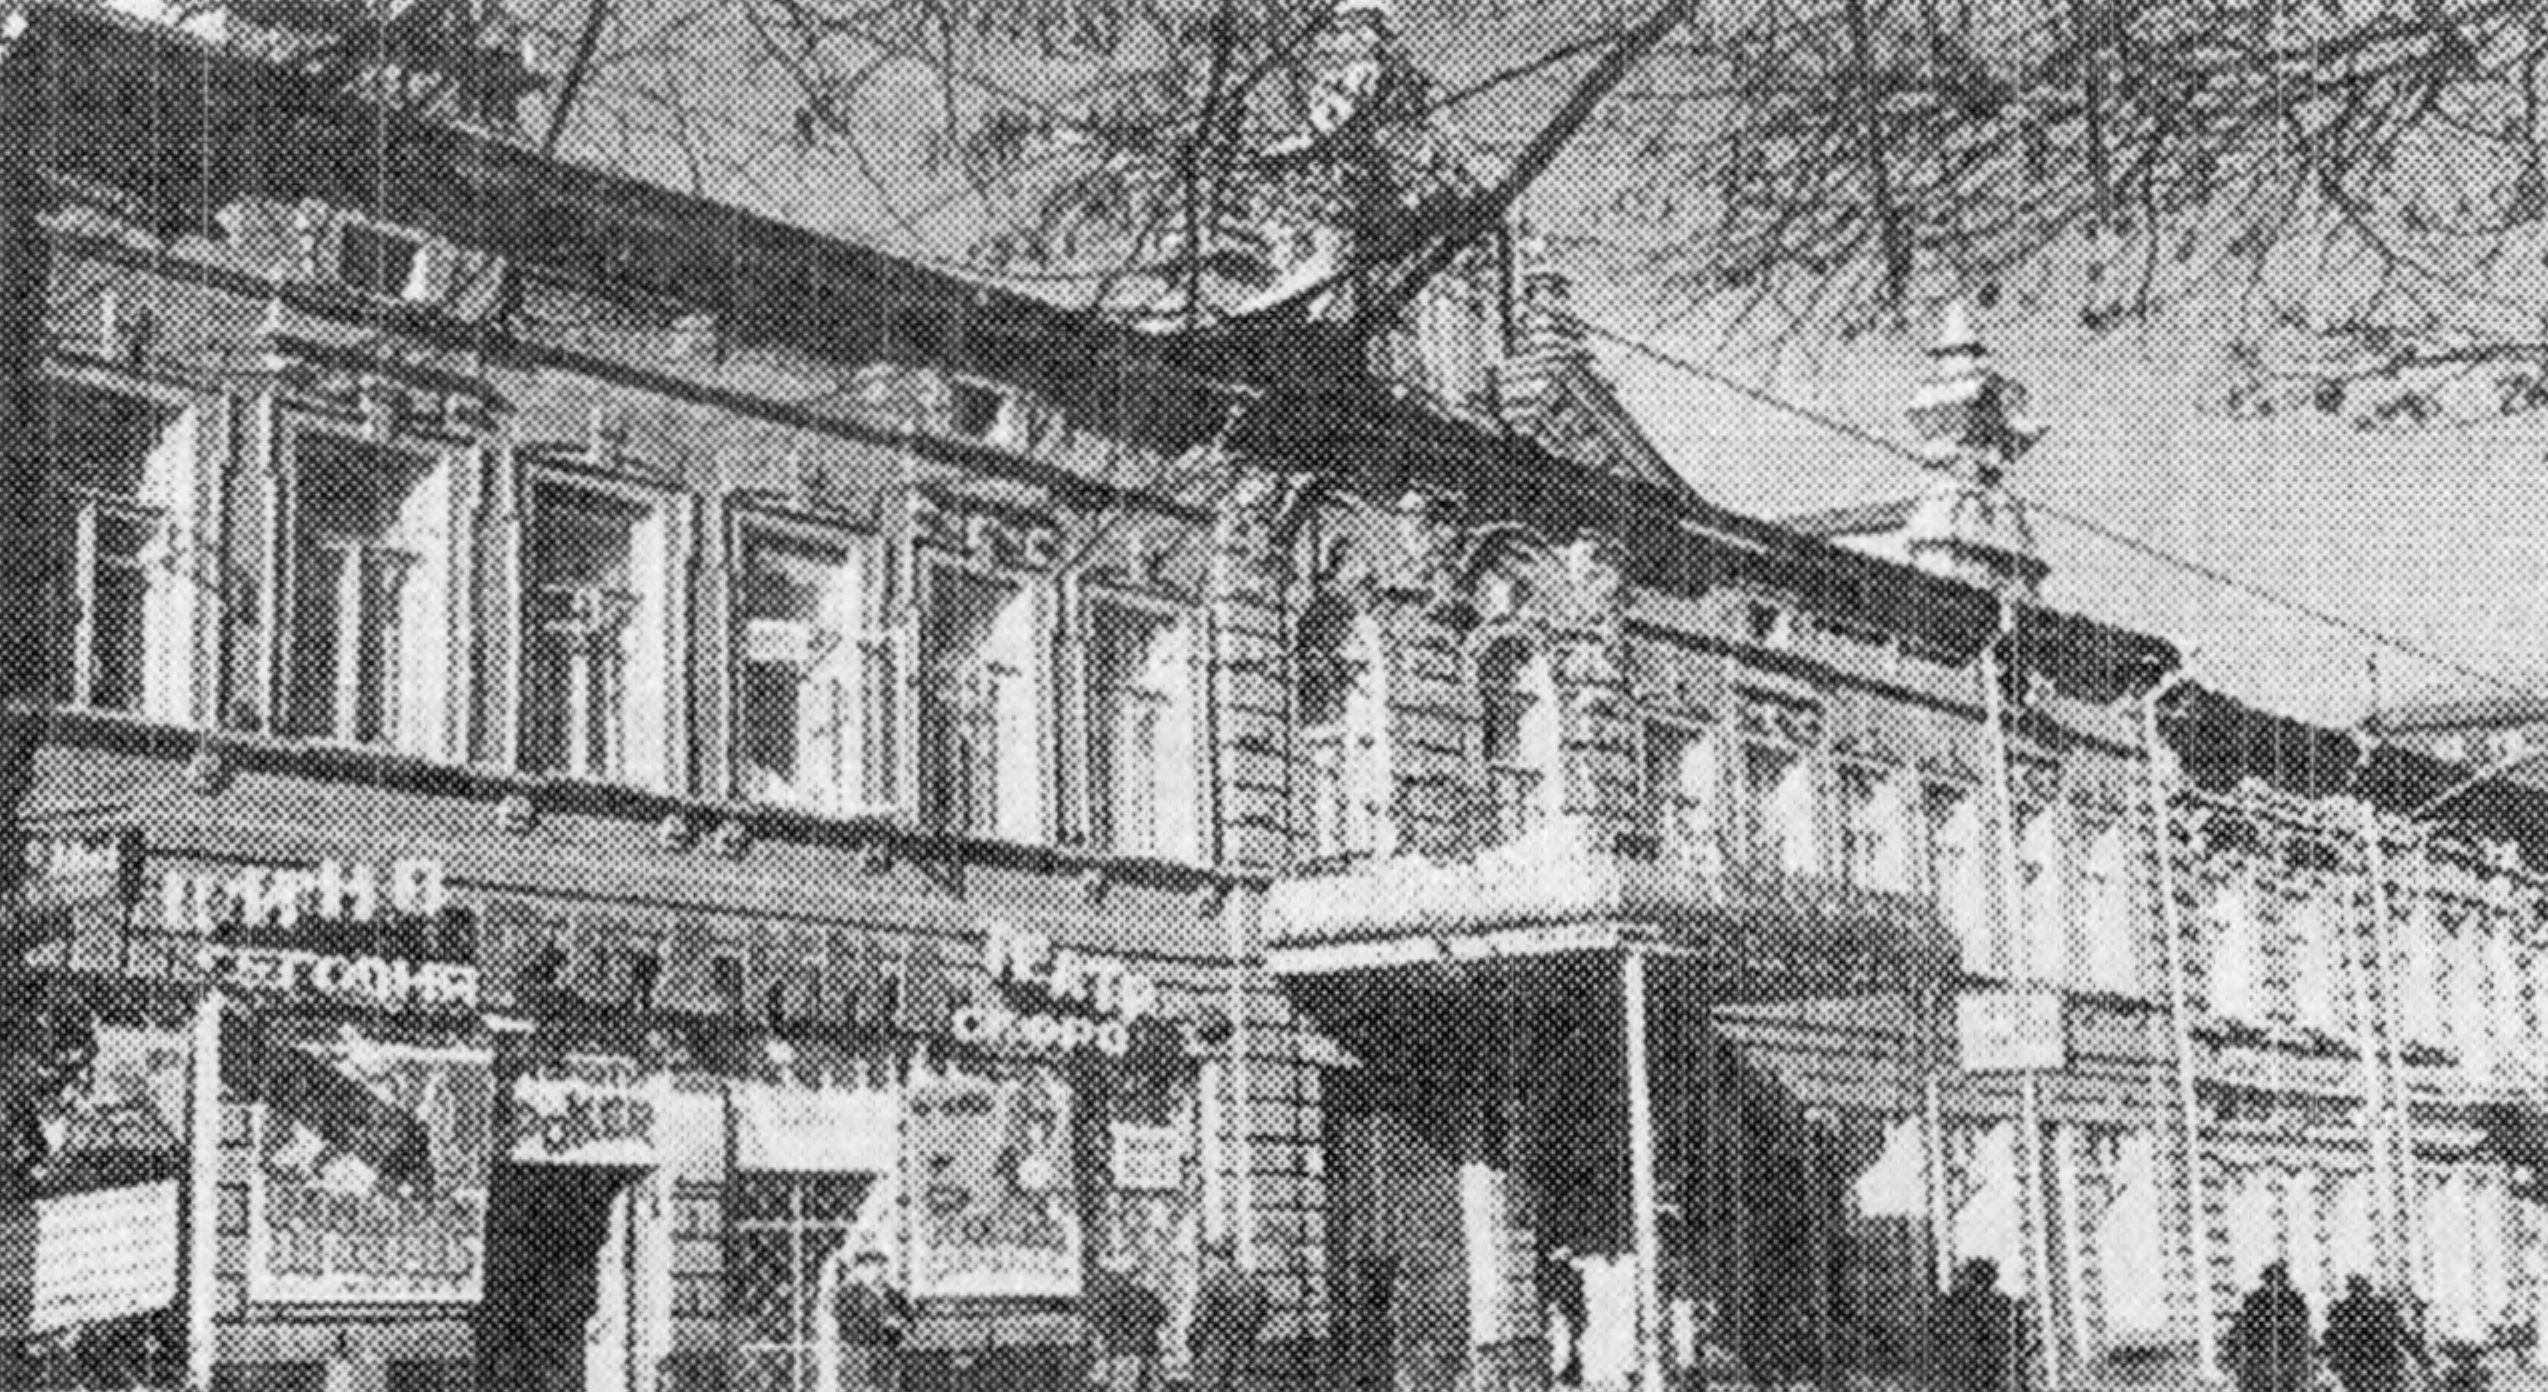 Кинемо «Гигант» 2-й советский театр — место проведения I «Живого журнала искусства и литературы «Карусель»